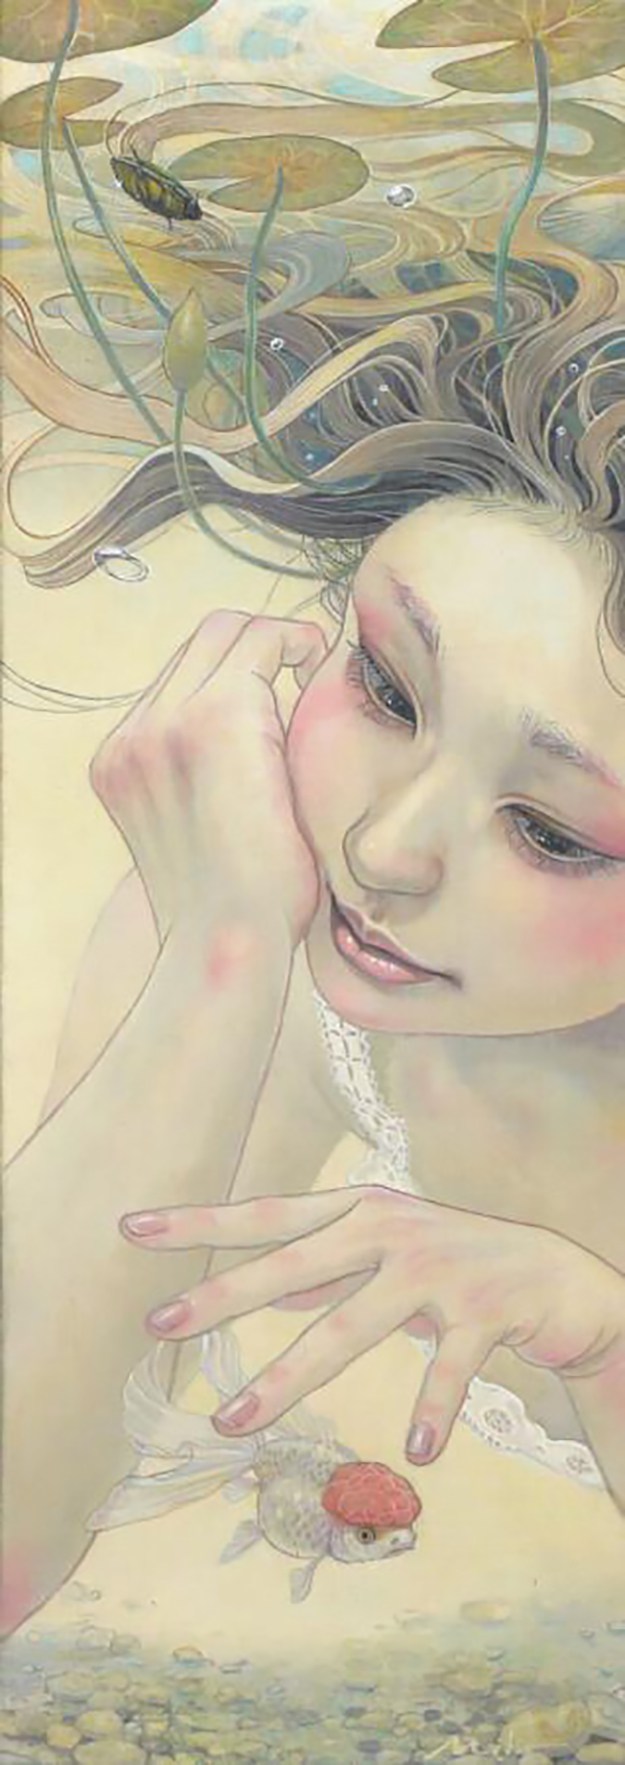 柔美浪漫的超现实主义的插画作品——平野实穗